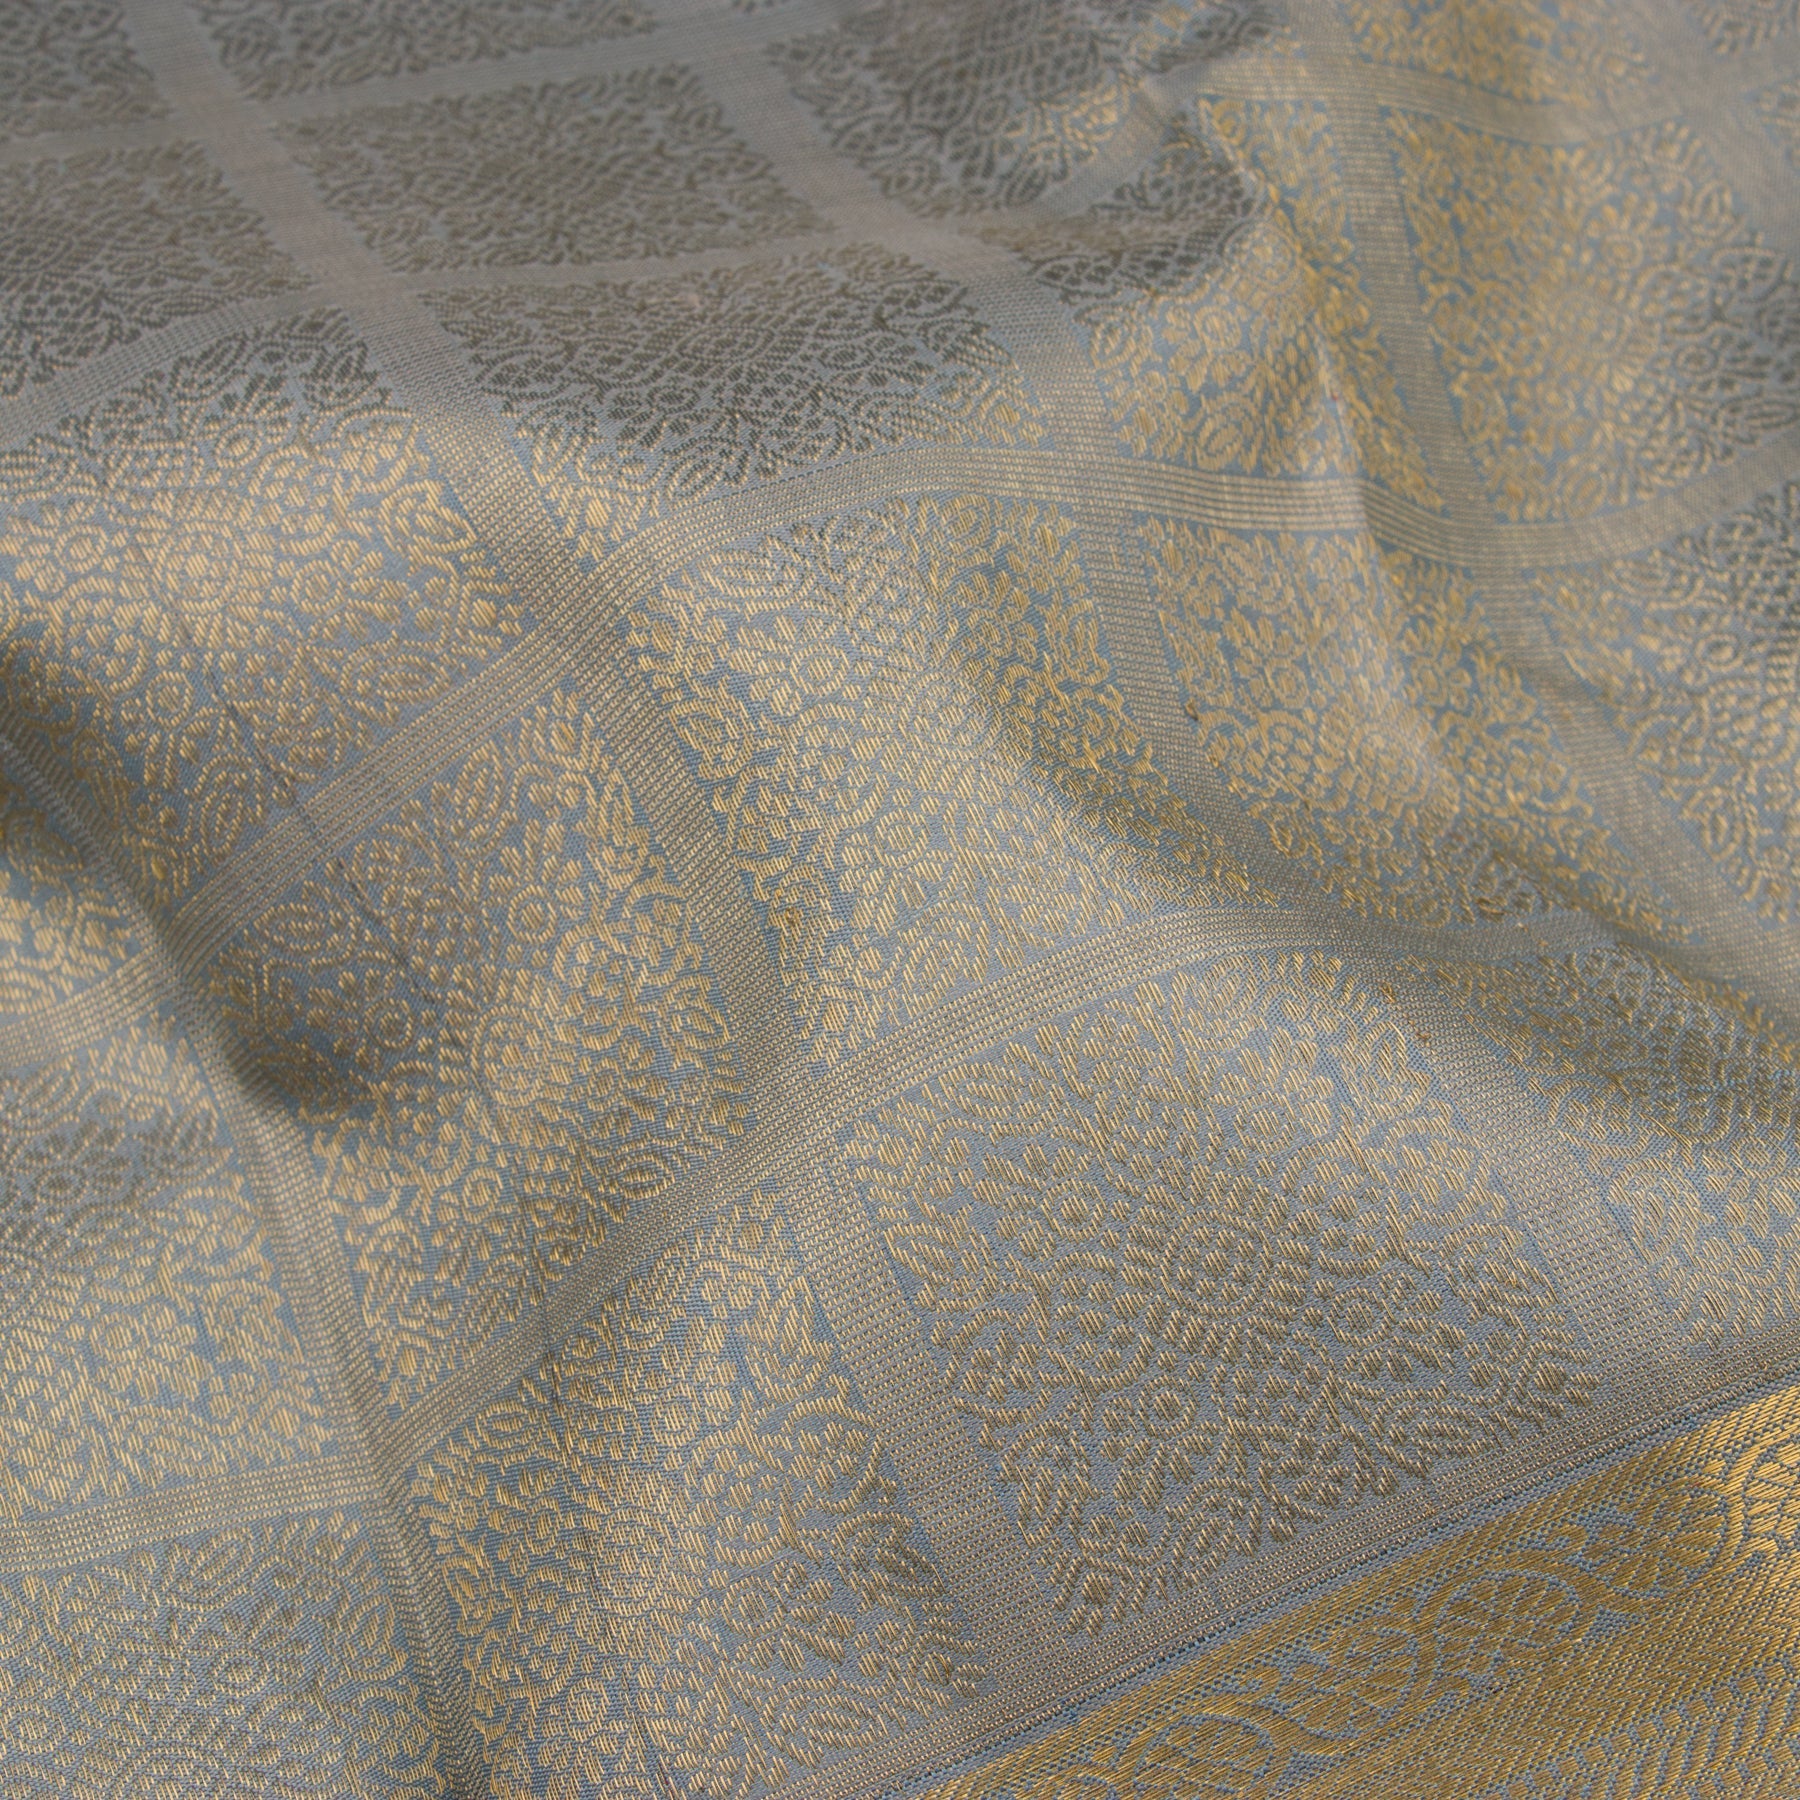 Kanakavalli Kanjivaram Silk Sari 22-612-HS001-10135 - Fabric View